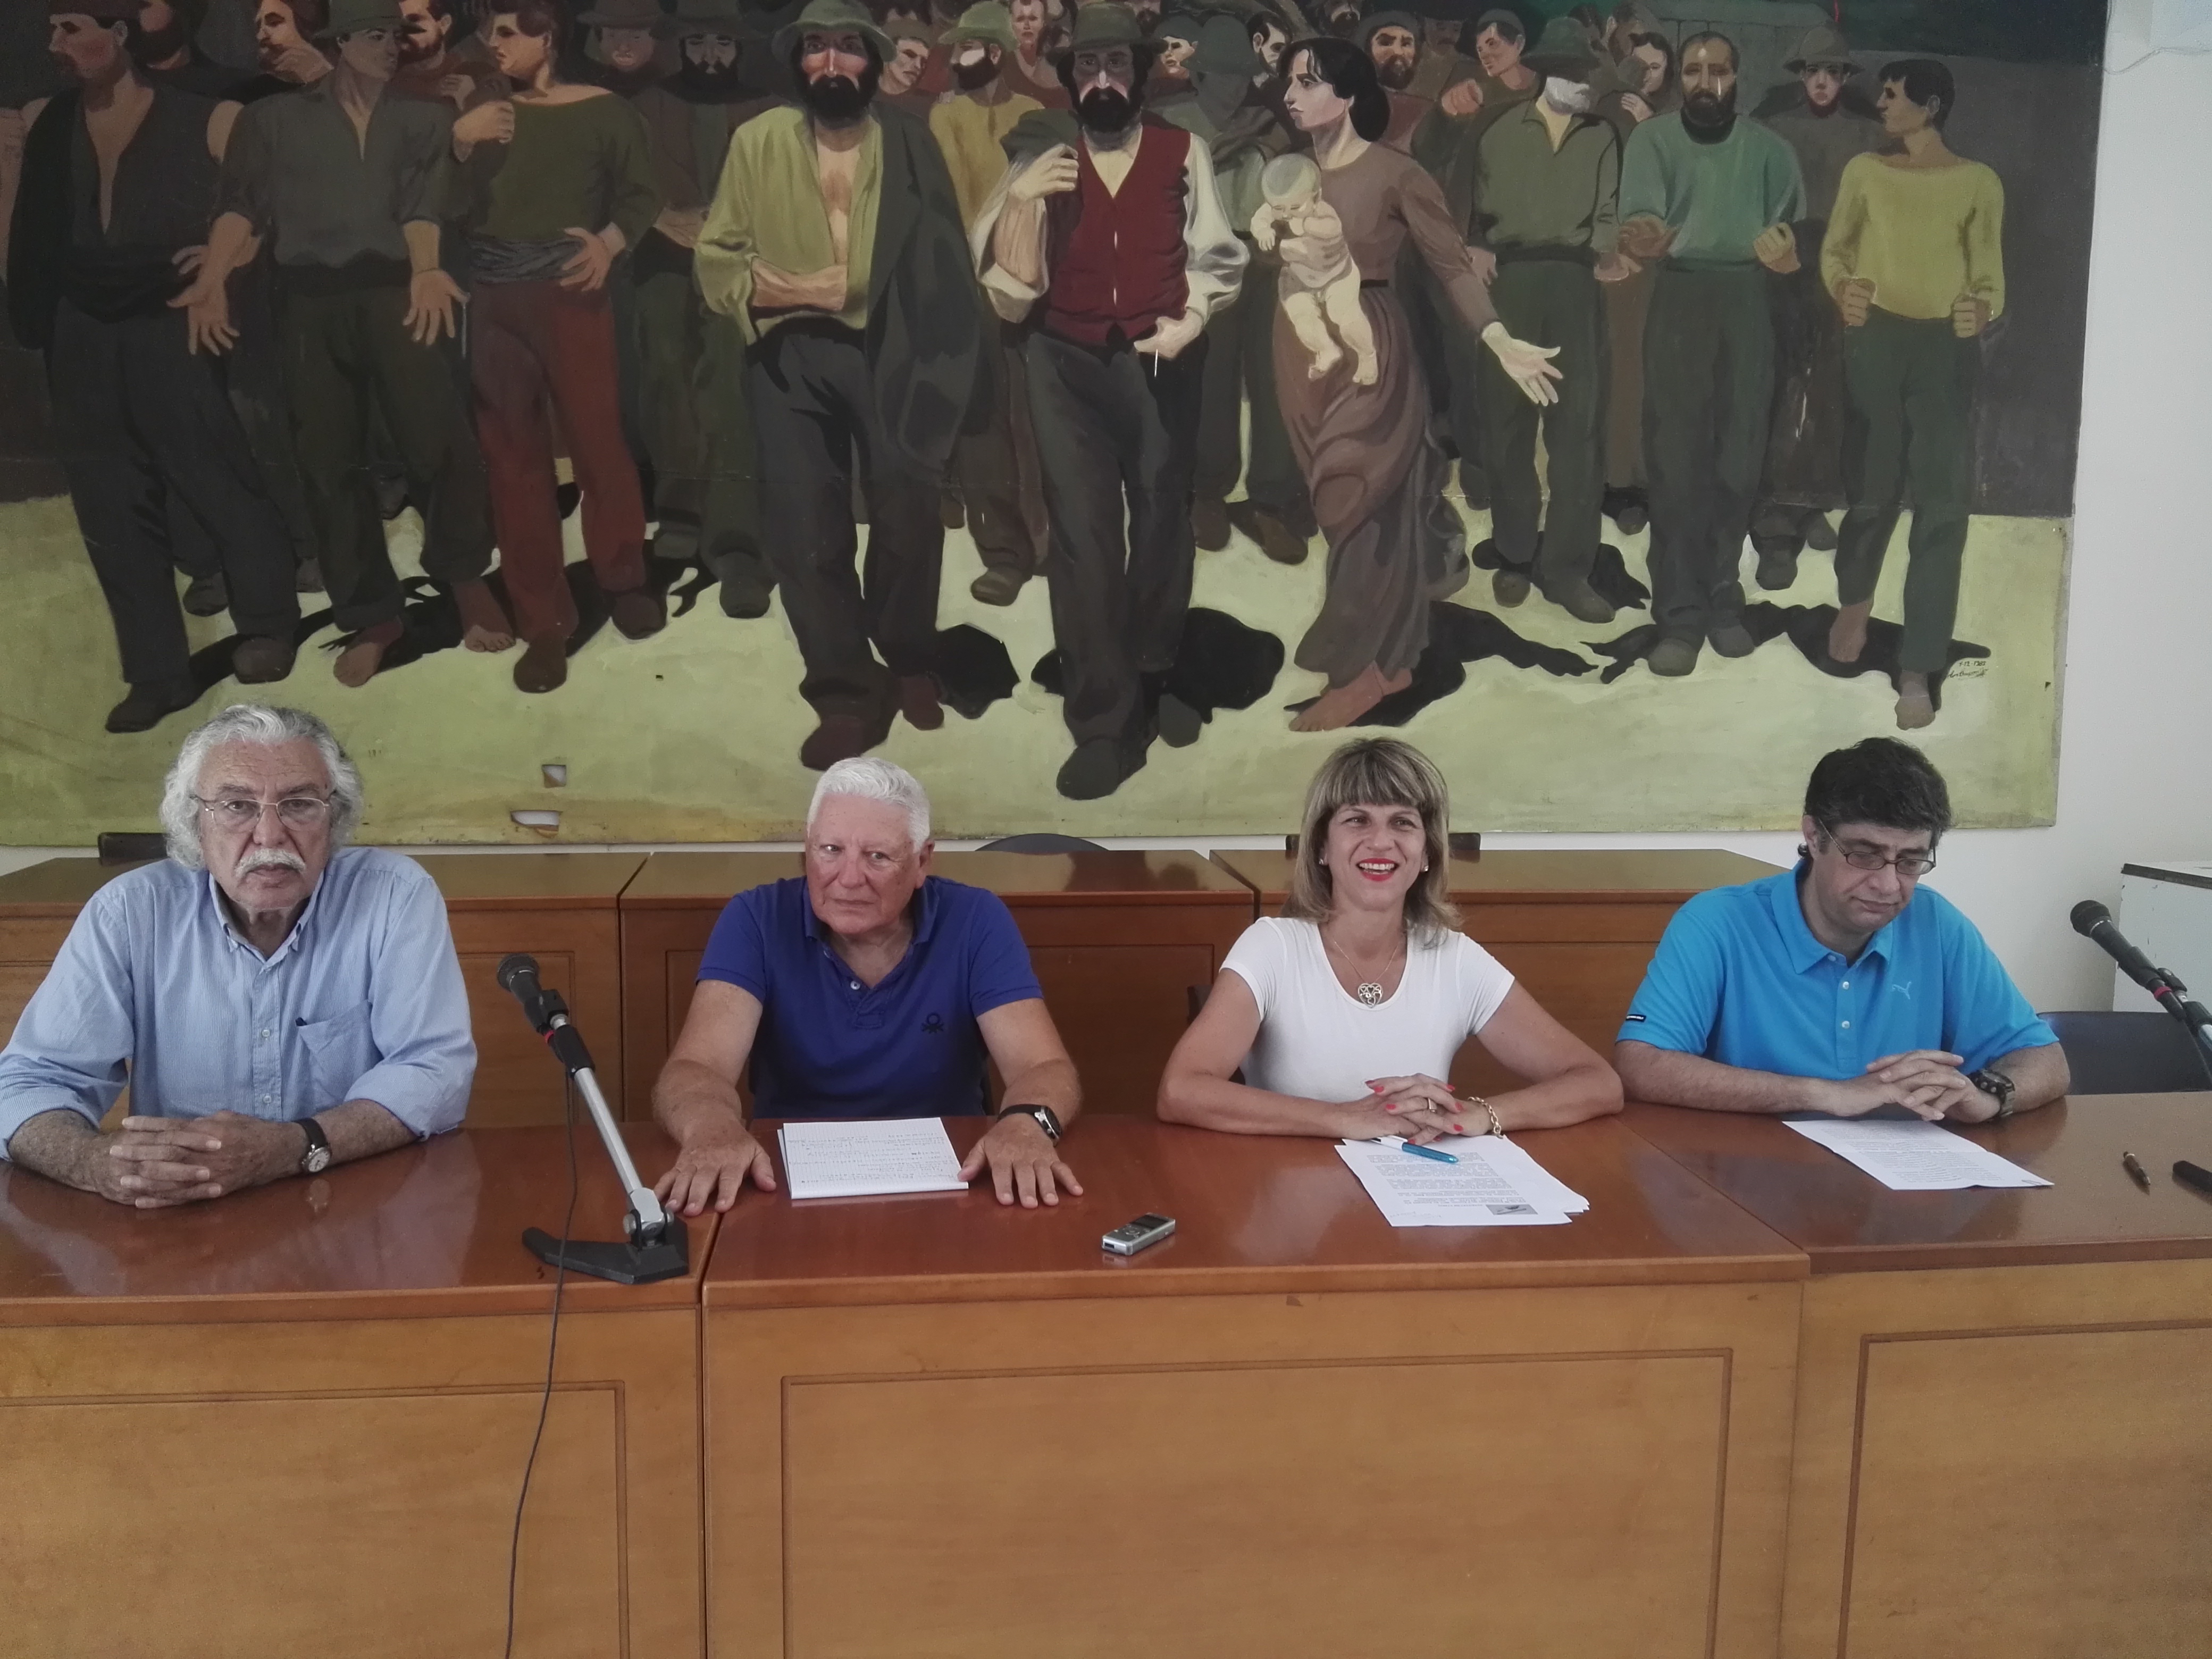 Χανιά: Προσυνεδριακός διάλογος της ΔΗΣΥ με αφορμή το συνέδριο στην Αθήνα